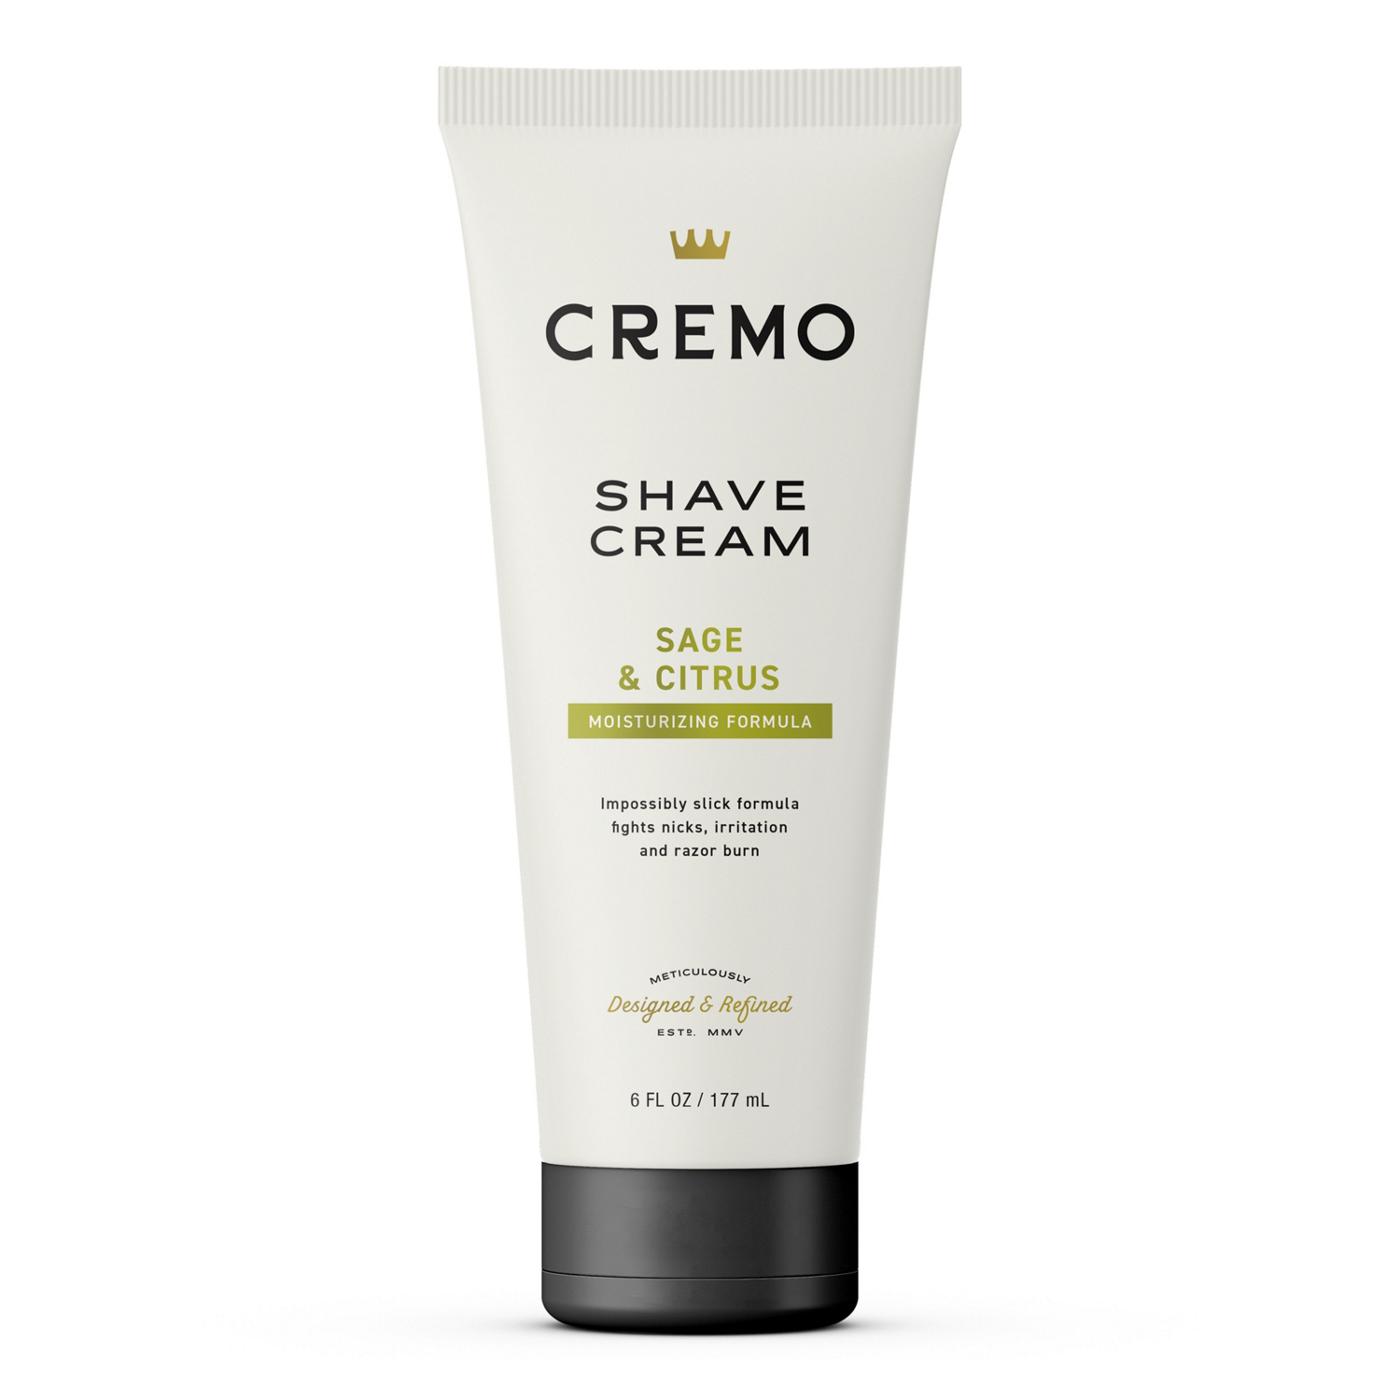 Cremo Shave Cream - Sage & Citrus; image 1 of 7